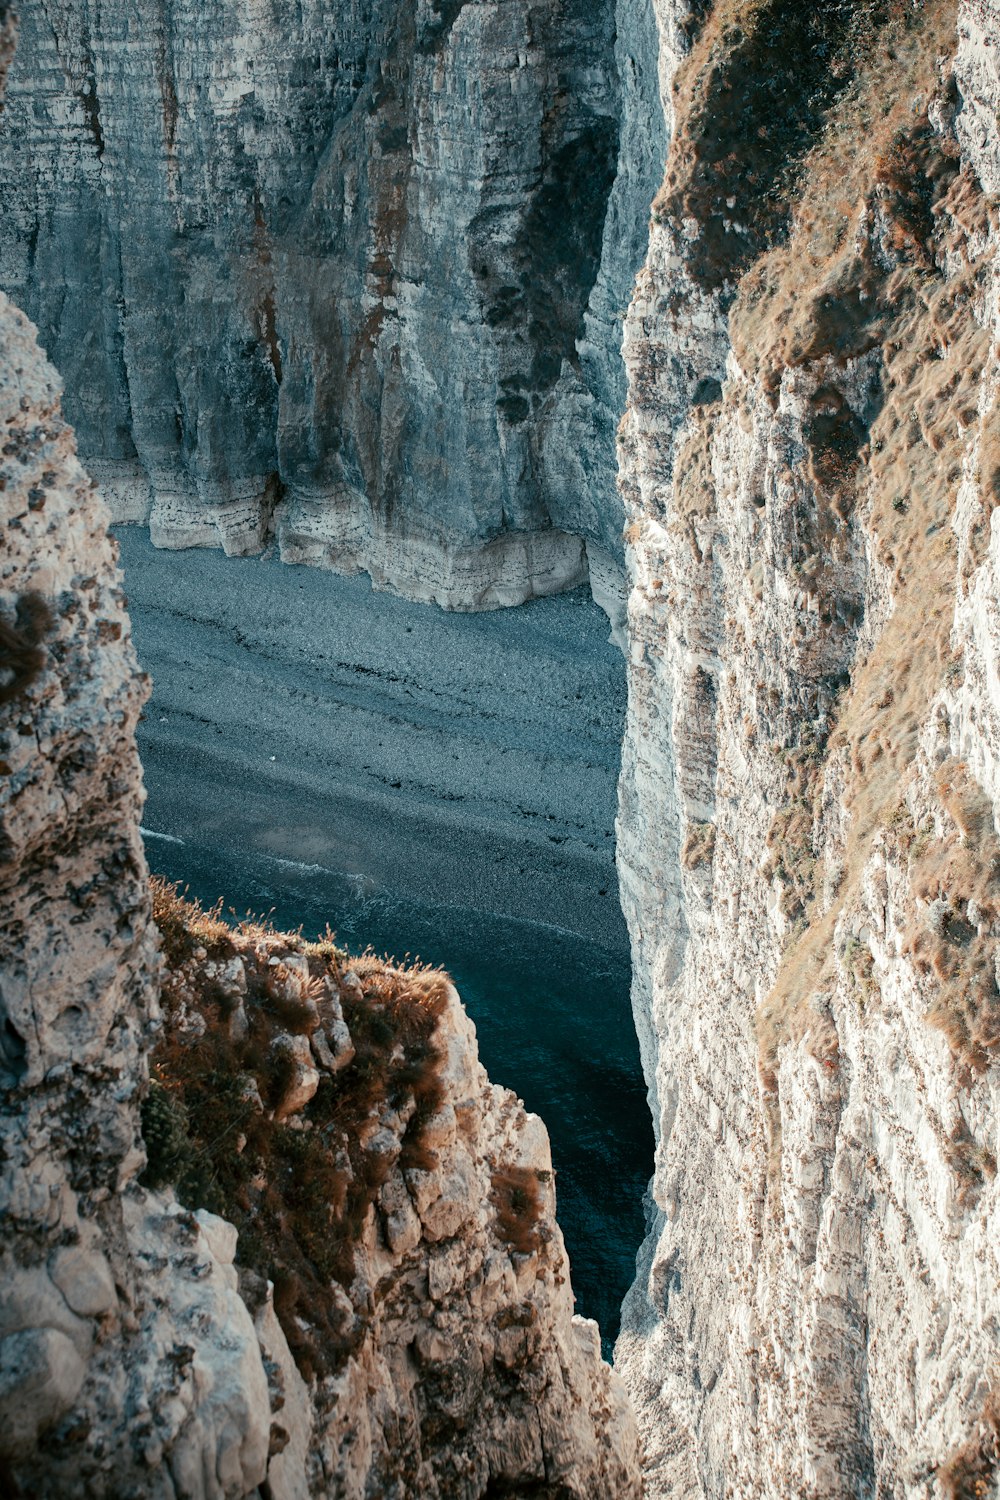 a river between rocky cliffs